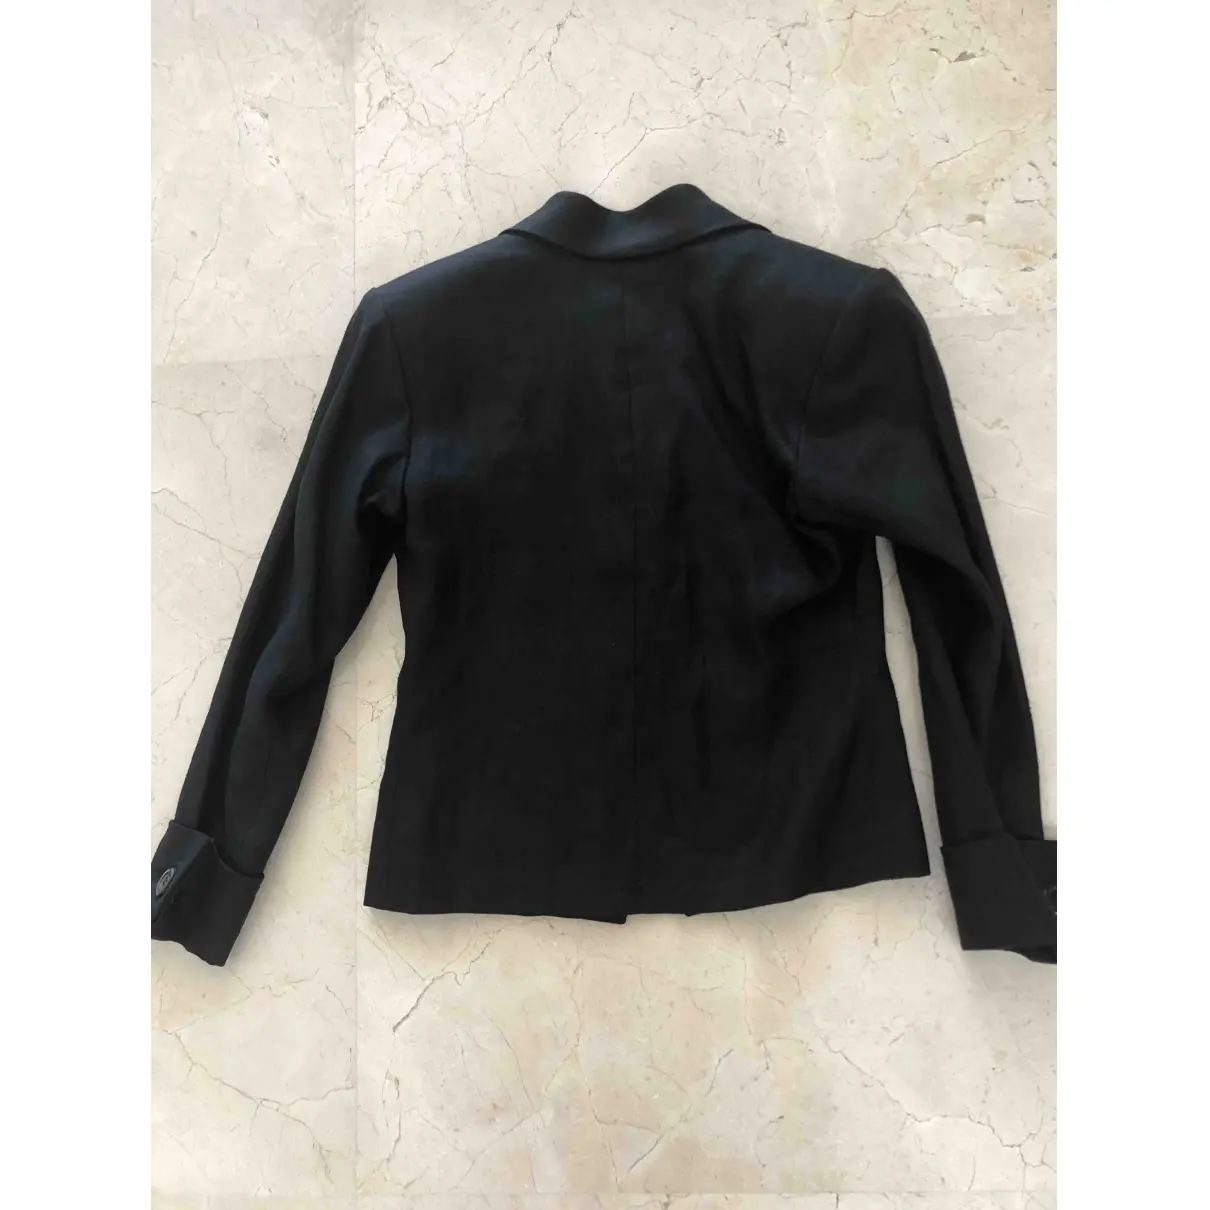 Yves Saint Laurent Linen suit jacket for sale - Vintage